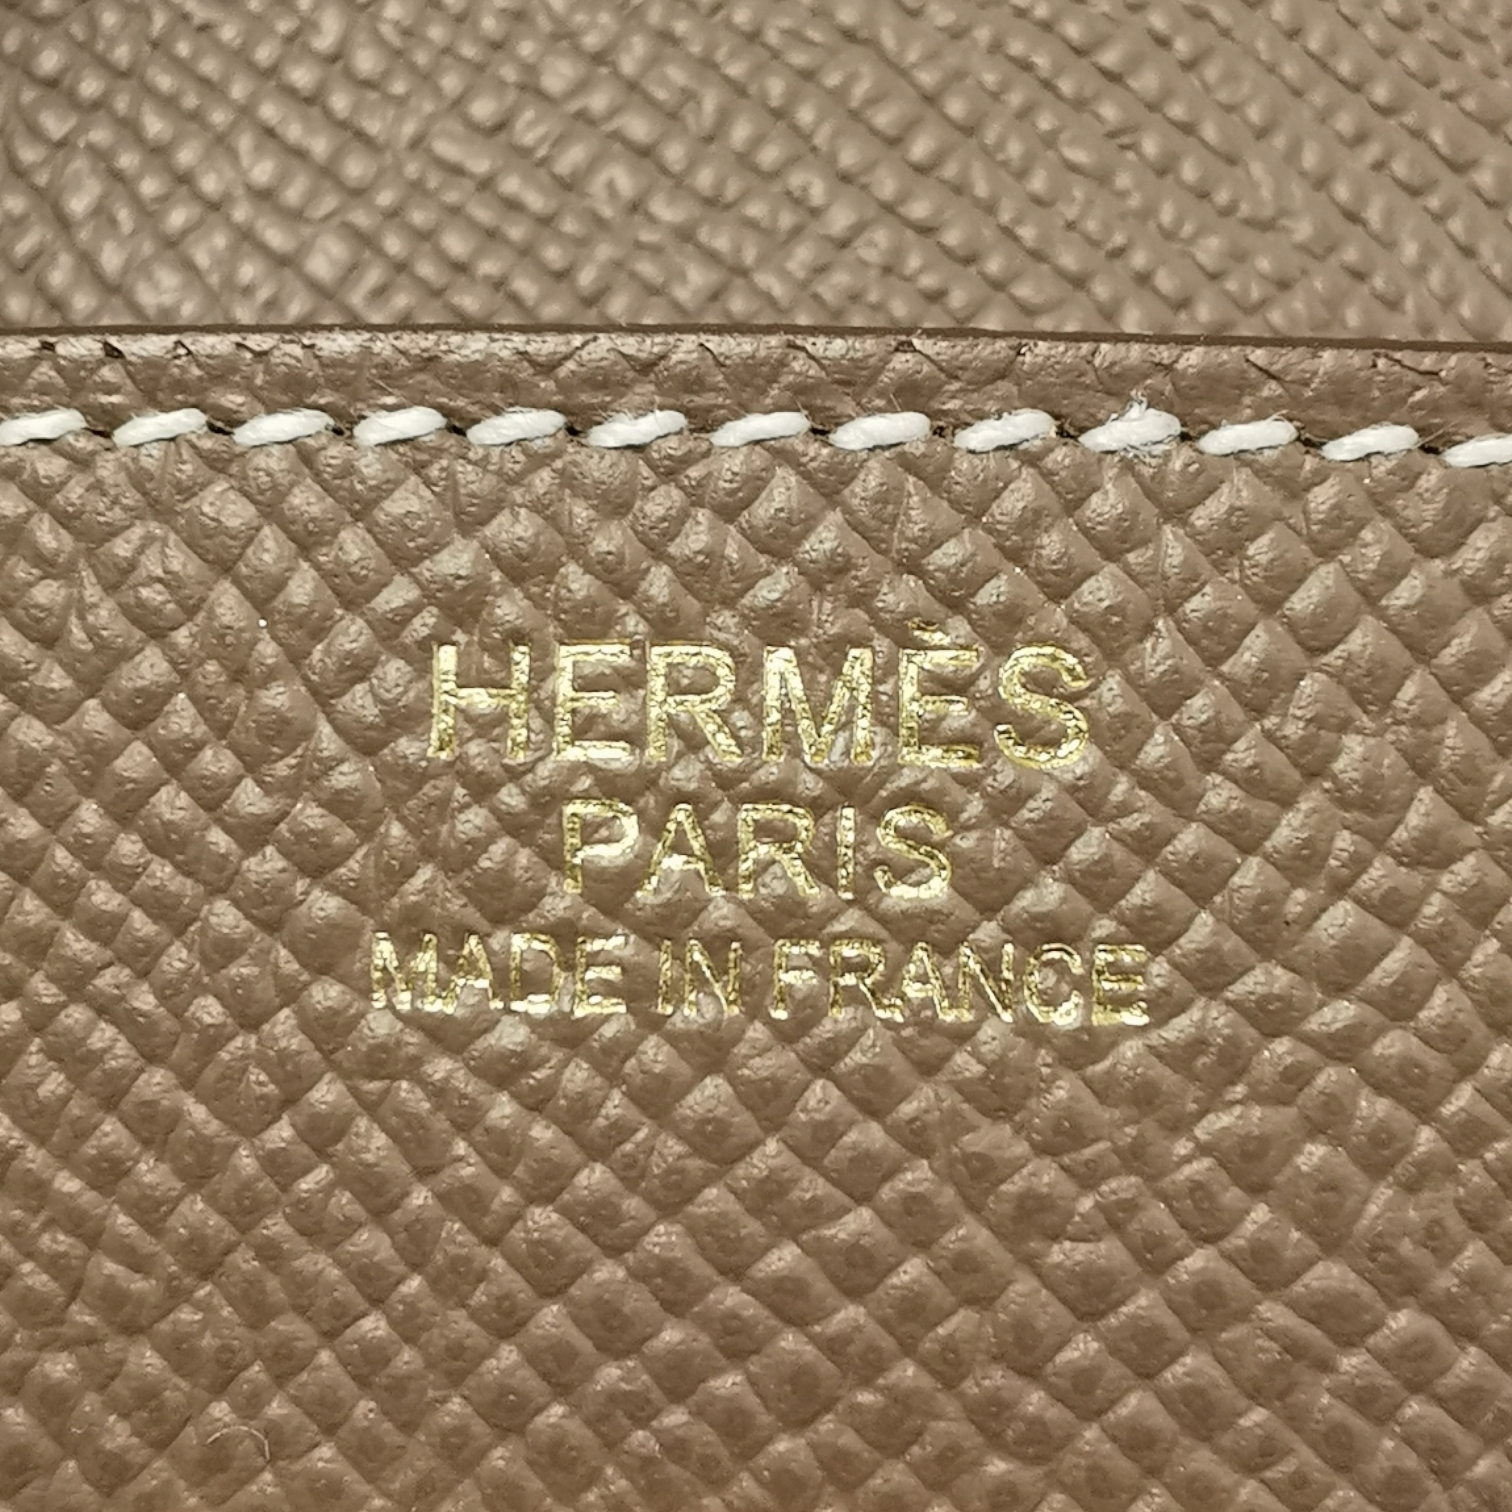 Hermès Birkin 30 Etoupe Epsom Gold